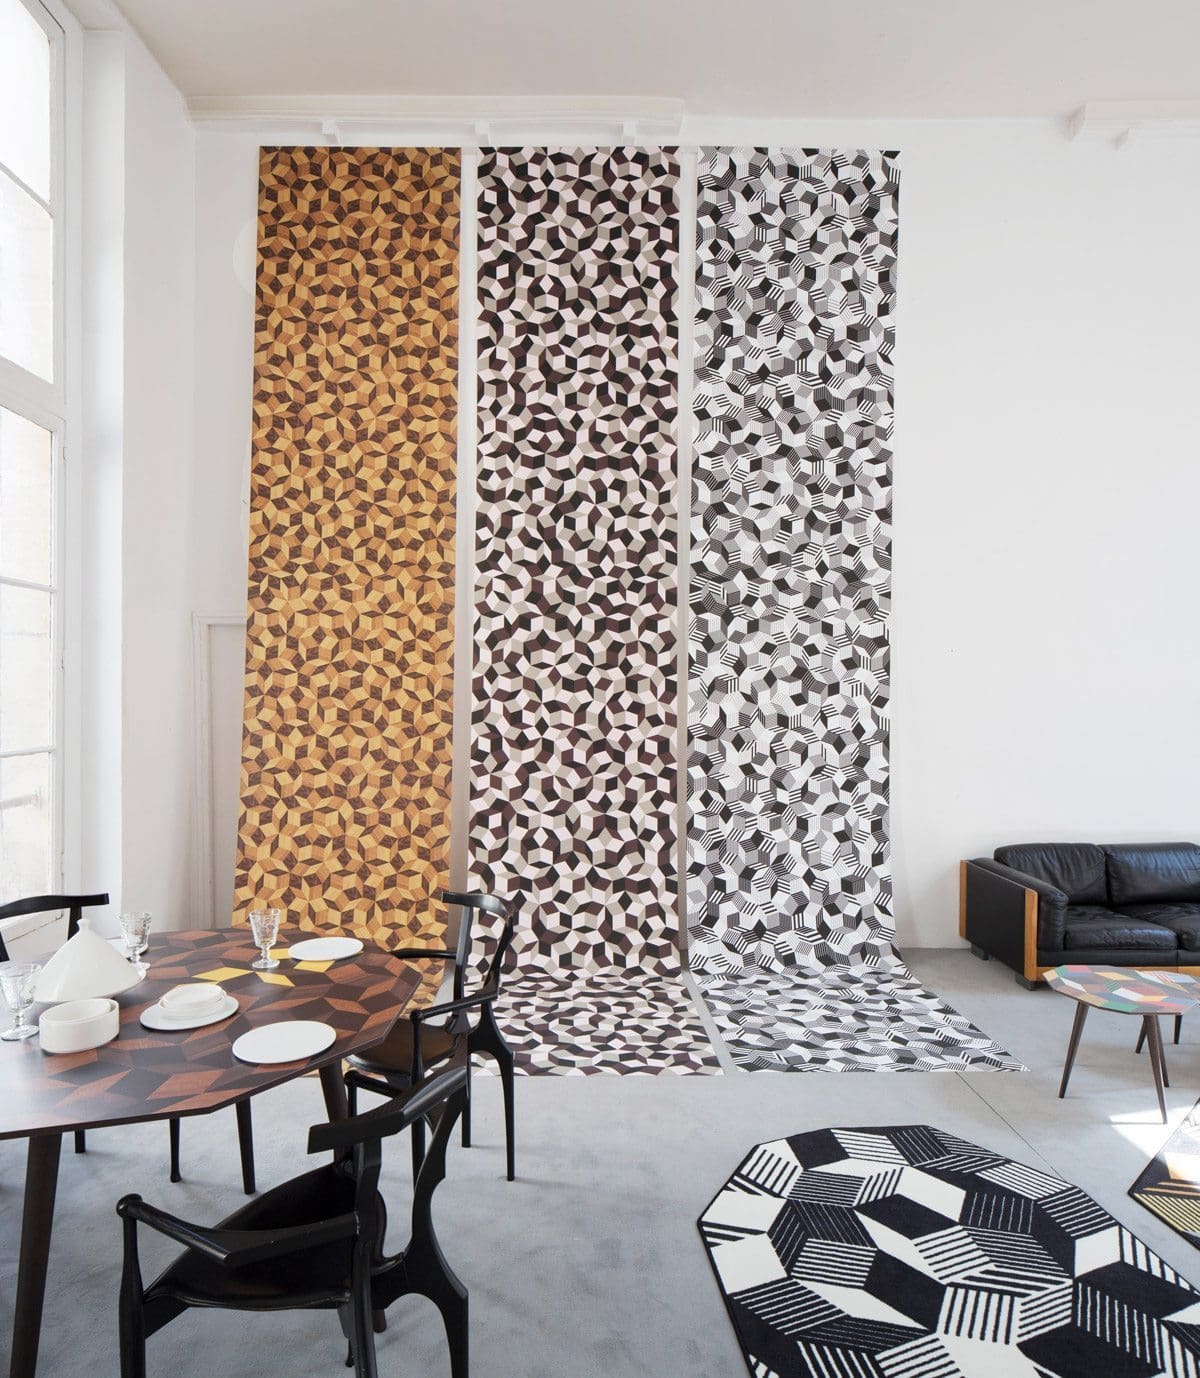 Exposition Penrose Project, Ich&Kar - Bazartherapy, Paris Design Week 2015, lés de papiers peints aux motif géométrique et table à manger Summer Wood, restaurant Le Derrière 